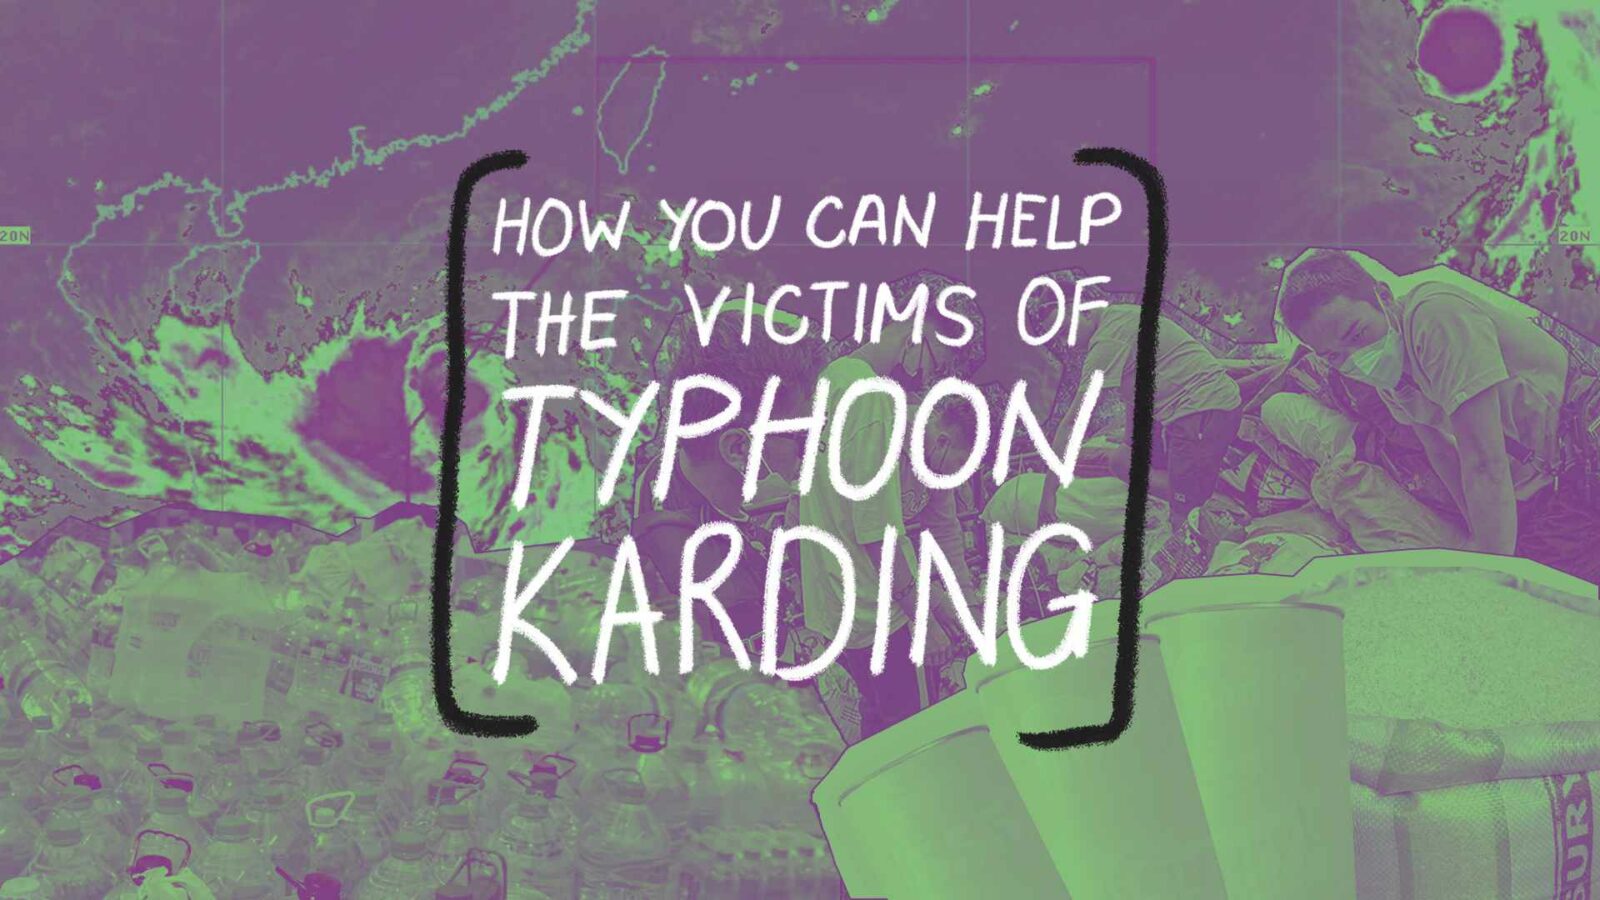 karding typhoon donation